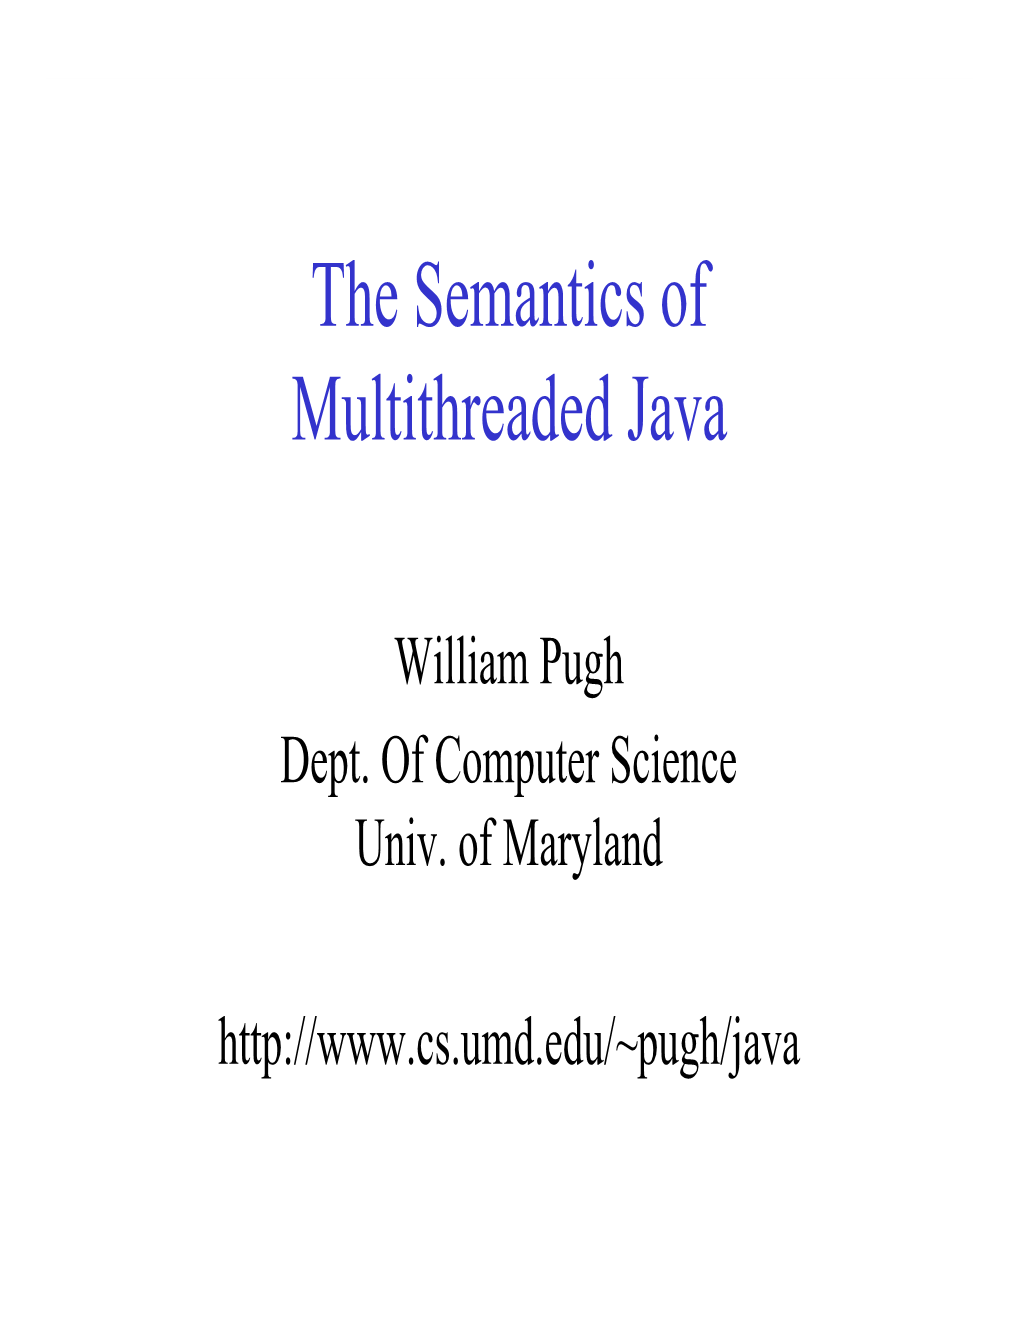 The Semantics of Multithreaded Java